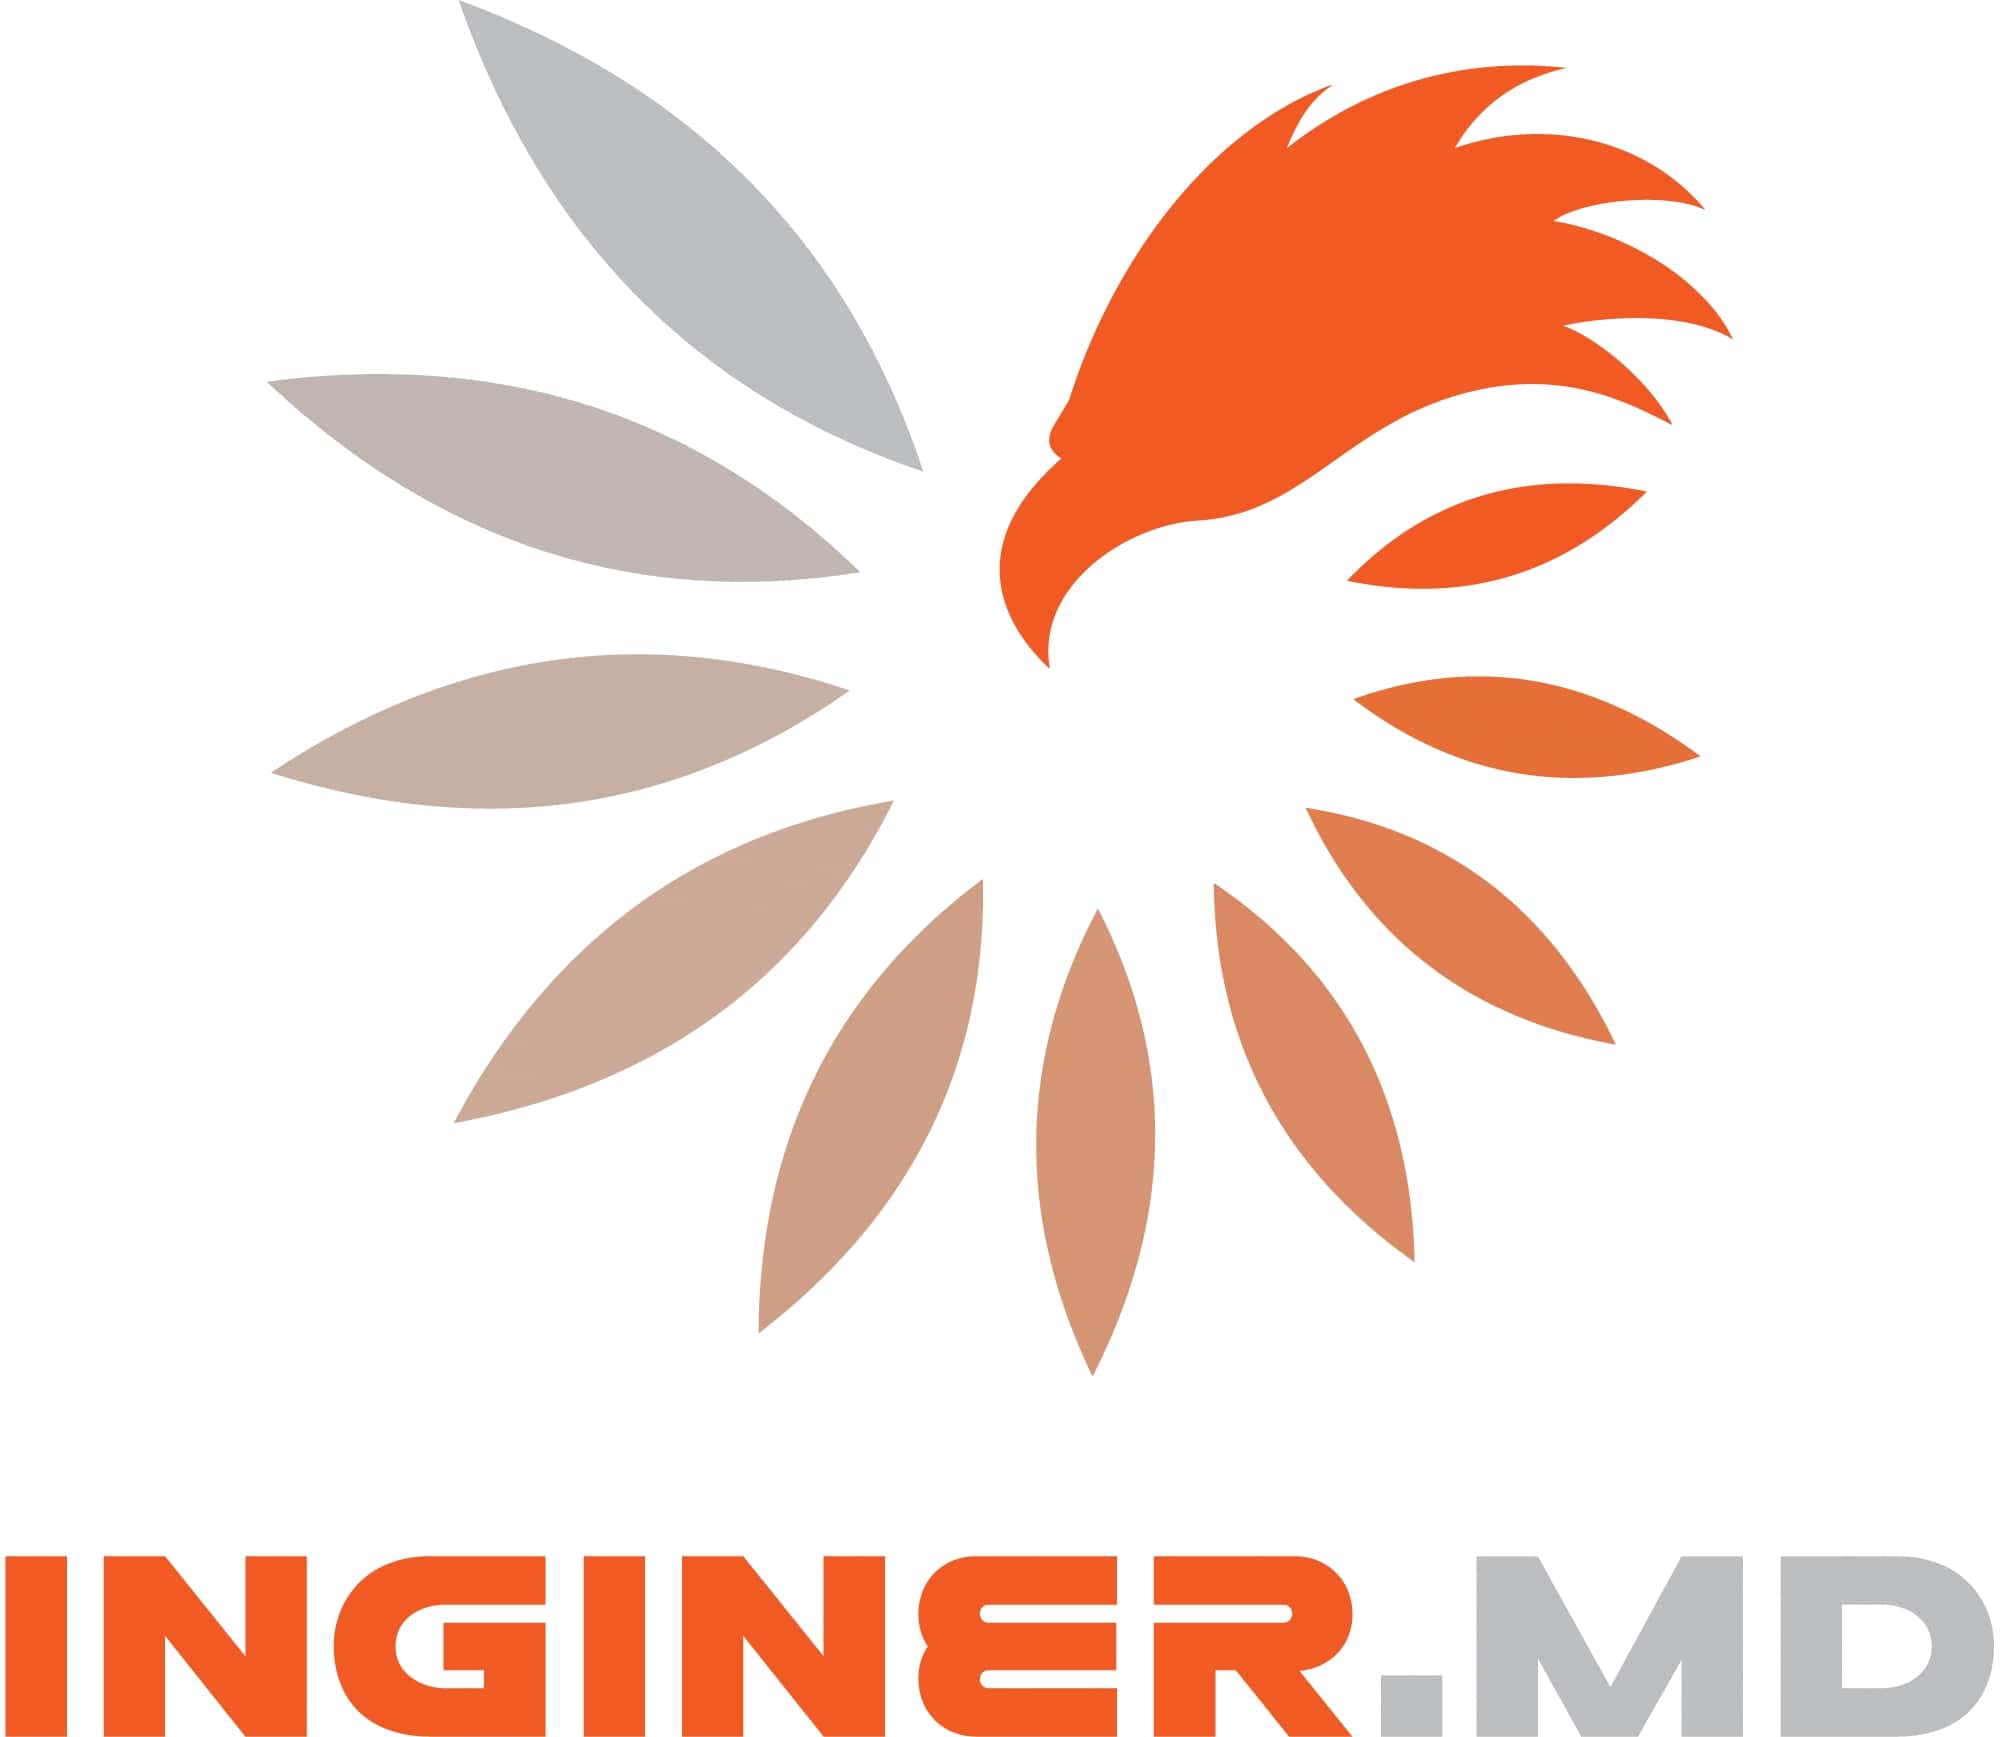 Rebranding in INGINER.MD